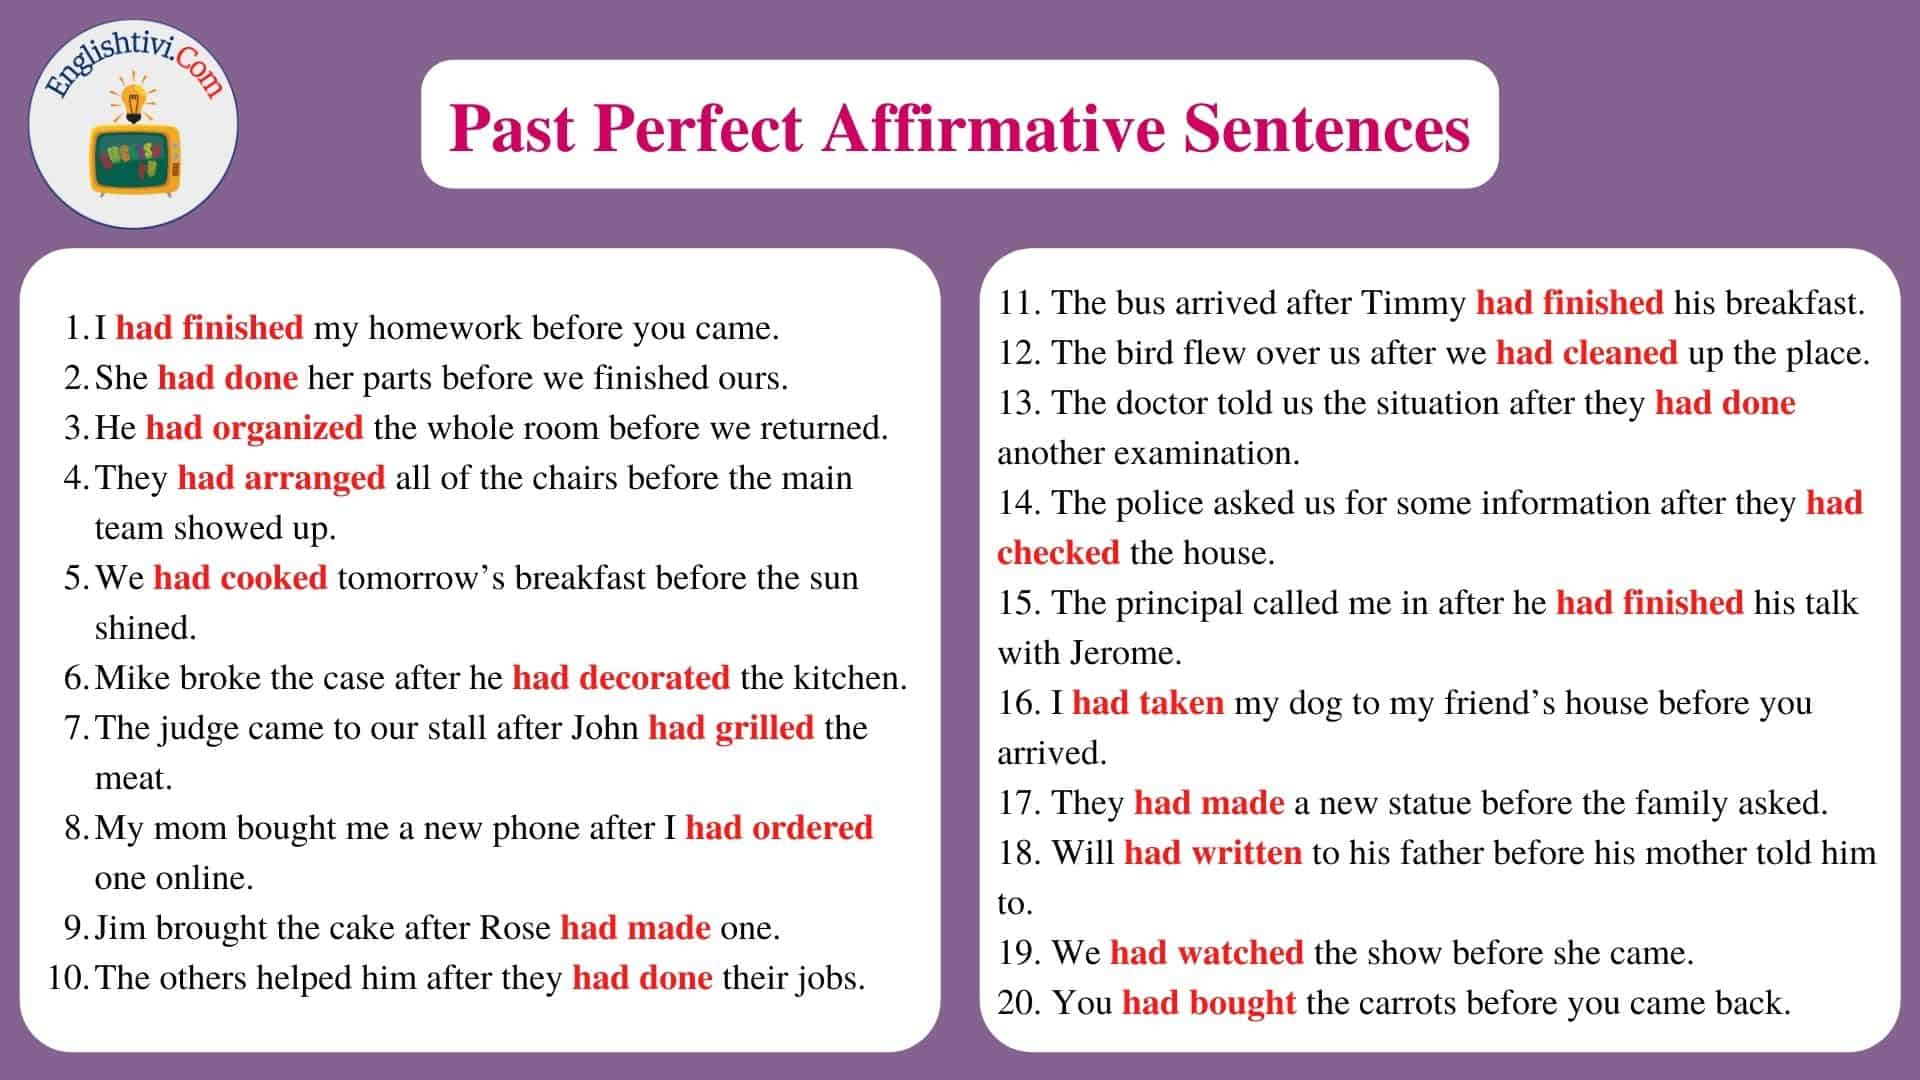 Past Perfect Affirmative Sentences